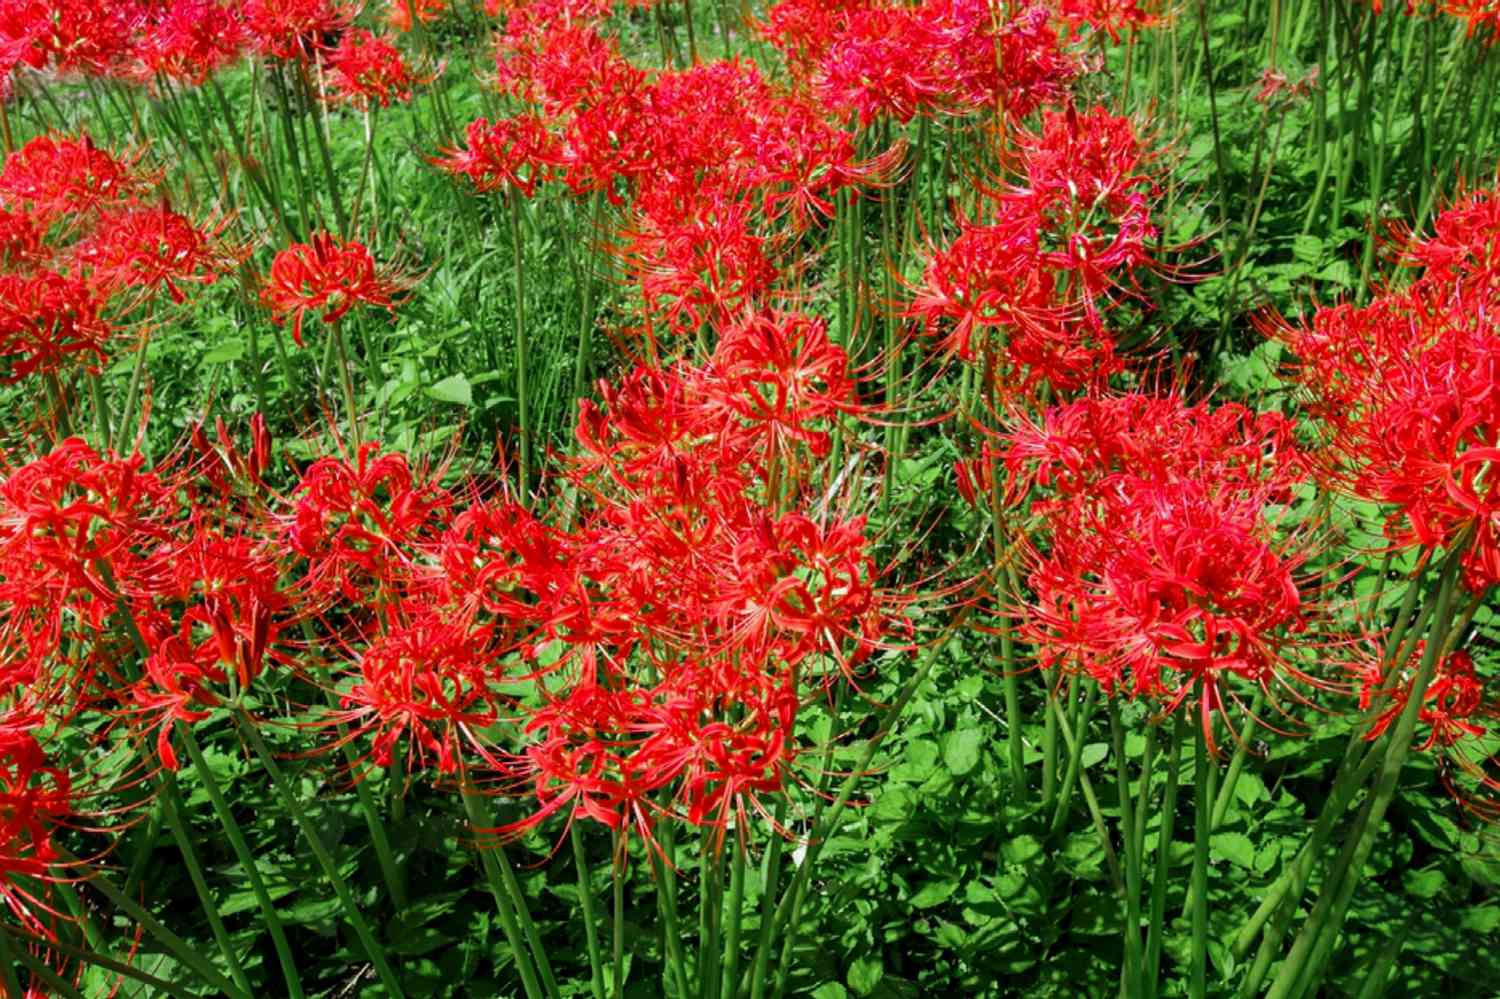 Spinnenlilienpflanzen mit langen dicken Stängeln und leuchtend roten Staubgefäßen und spinnenartigen Blütenblättern